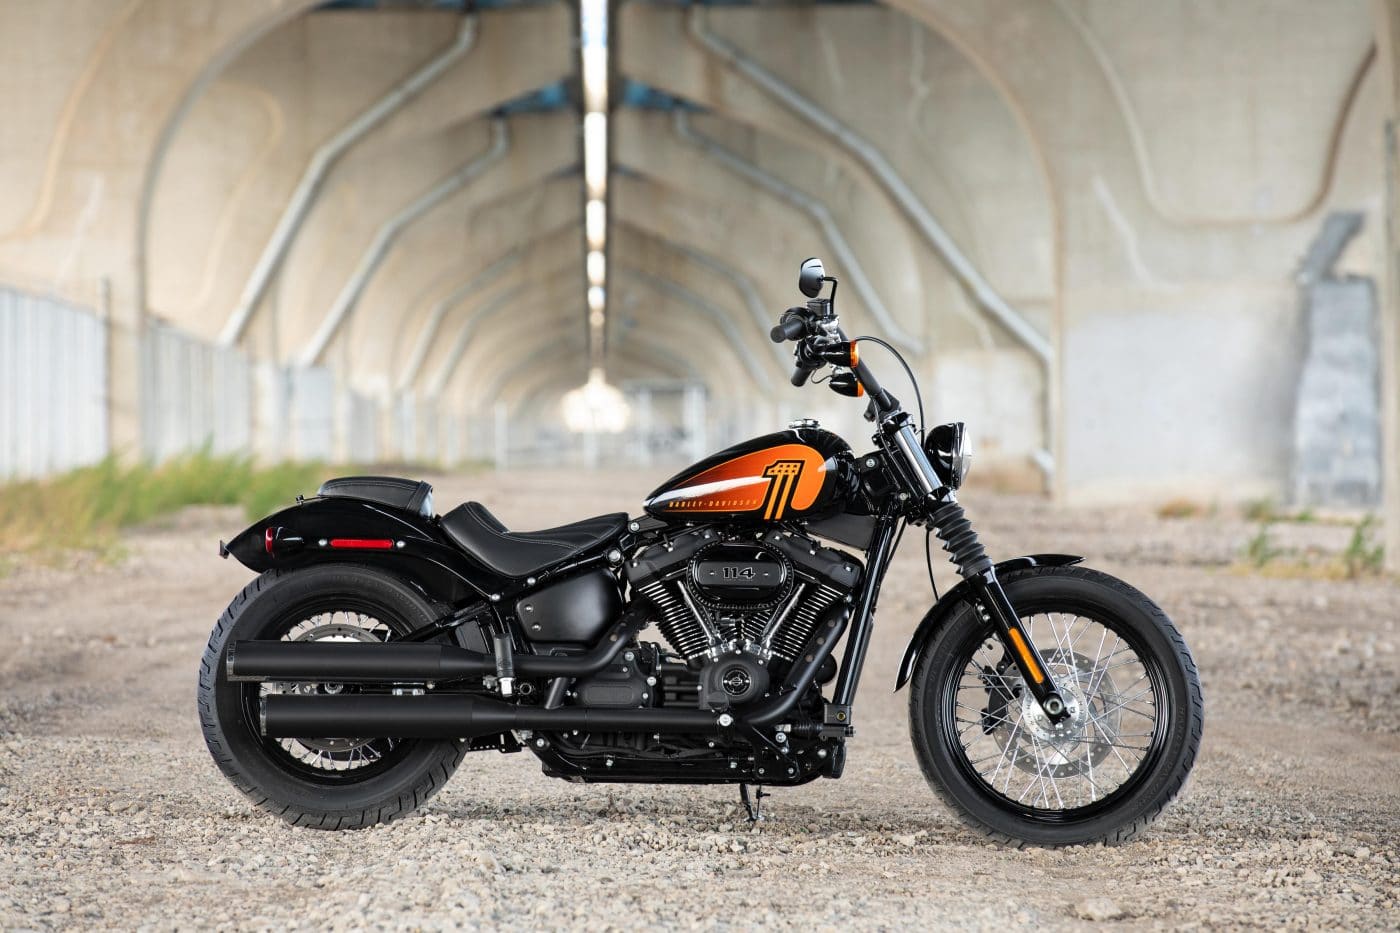 Die 2021er Harley Davidson Bikes Schuren Die Leidenschaft Fur Abenteuer Und Freiheit Kolner News Journal